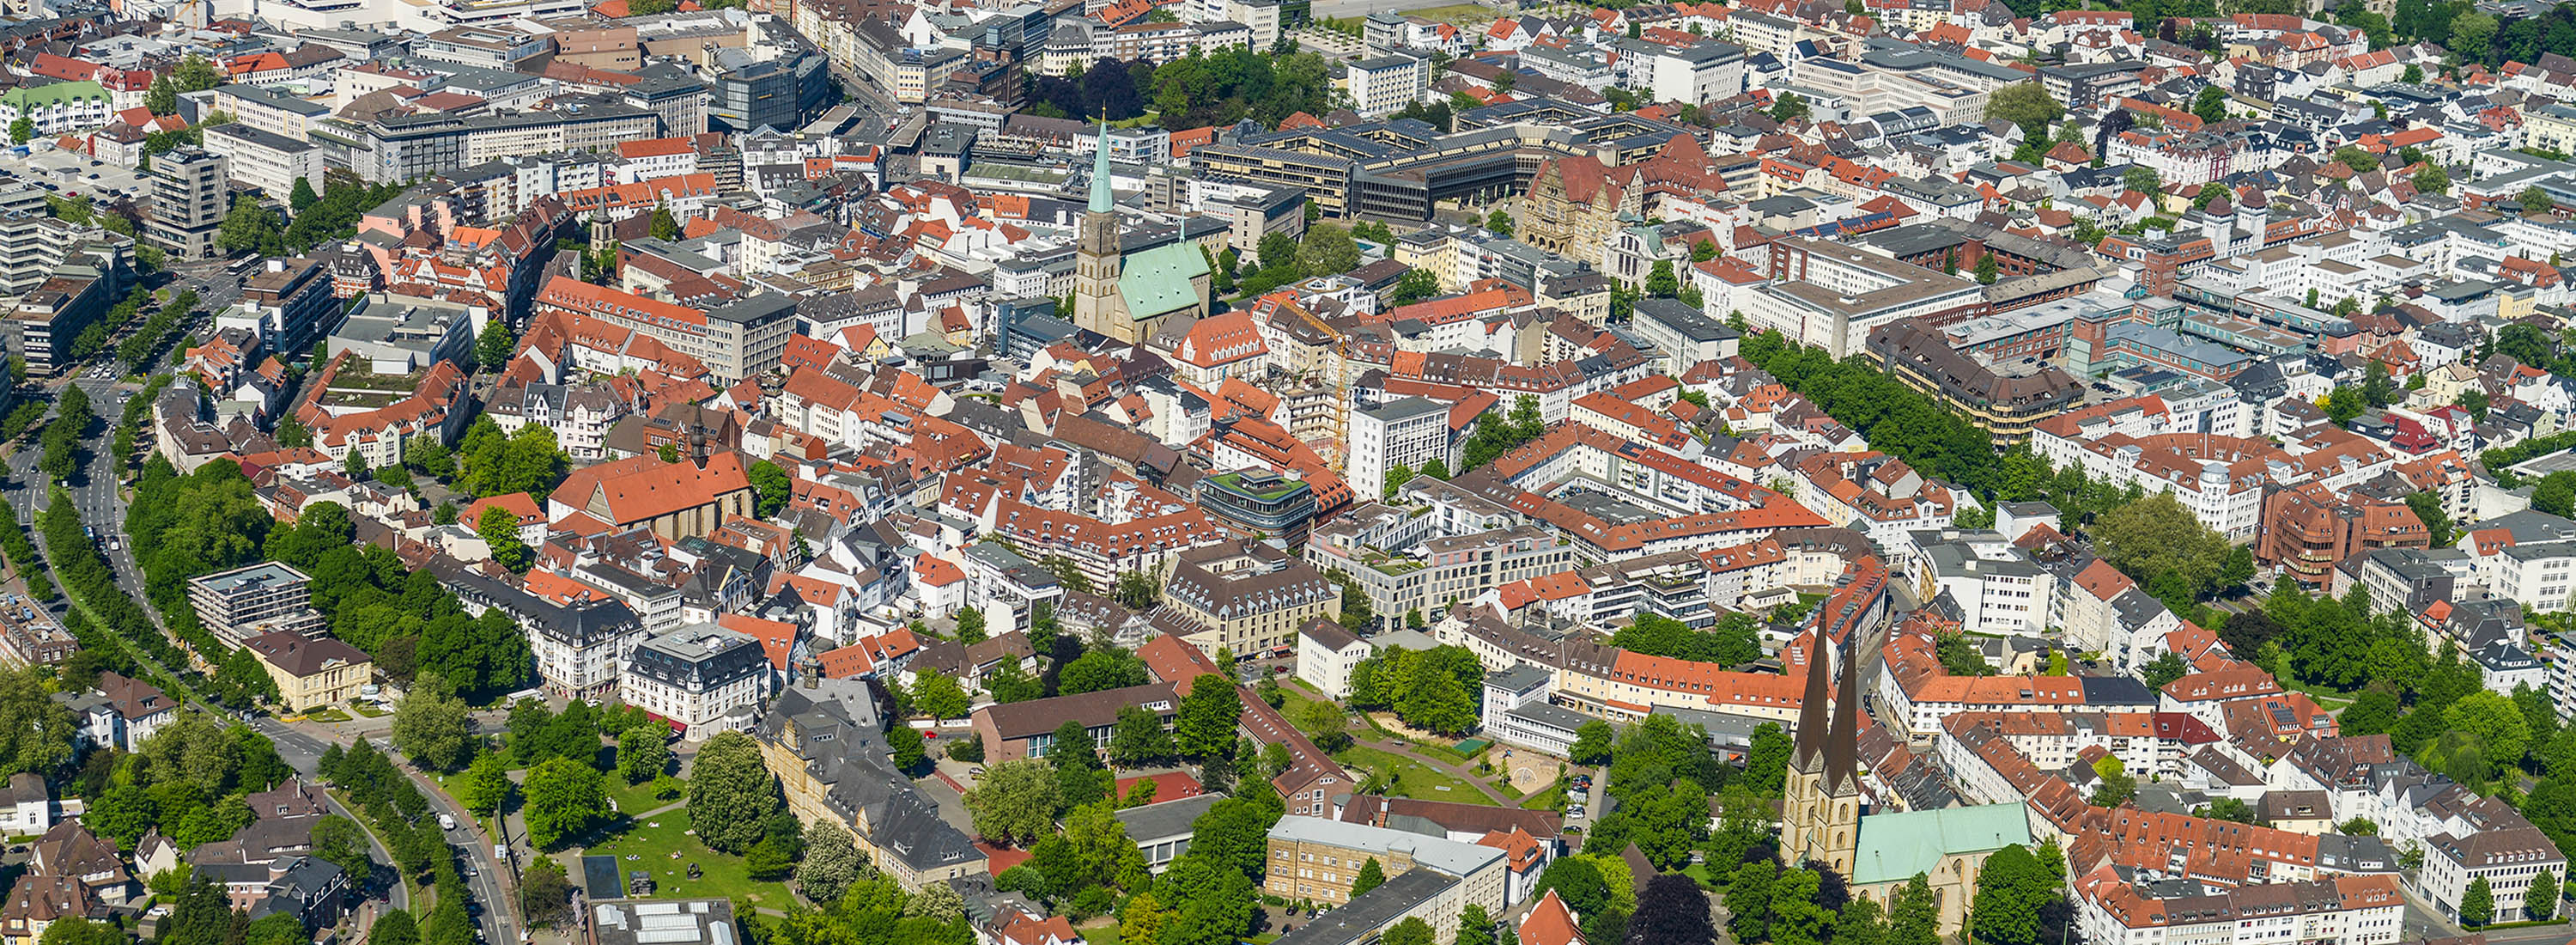 Luftbild Altstadt Bielefeld